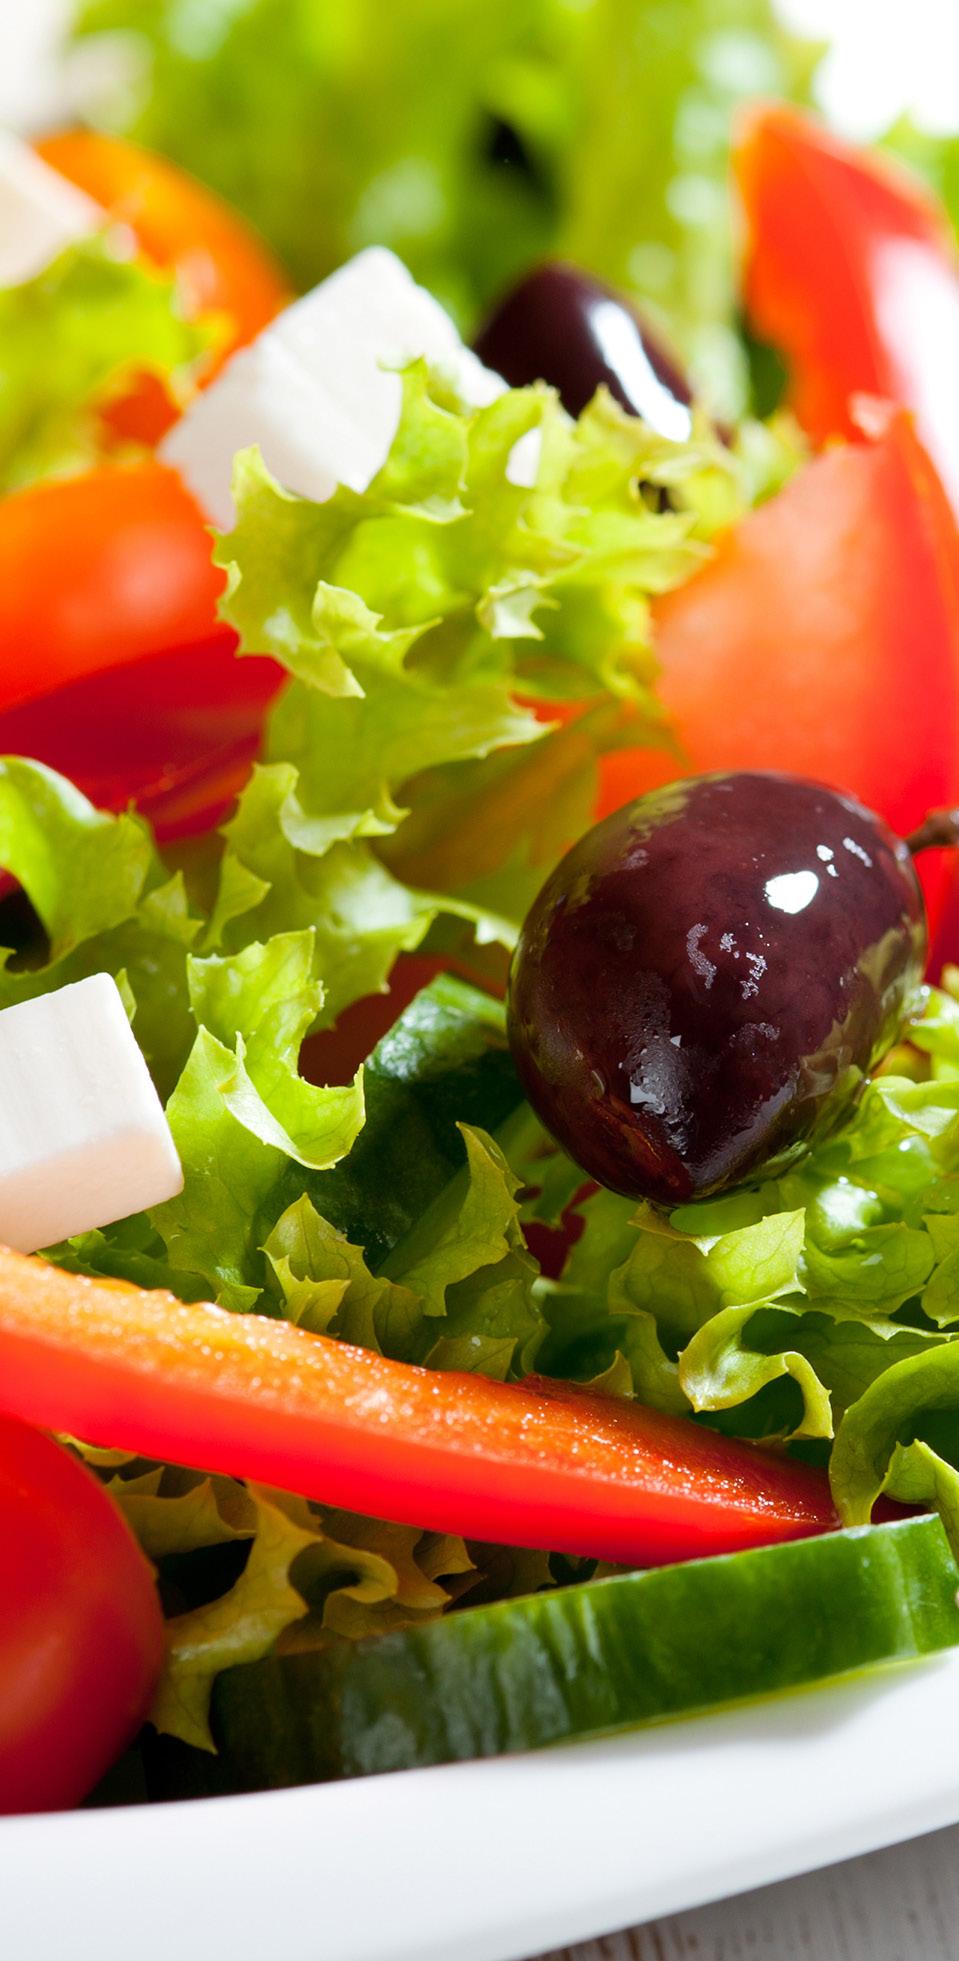 lilahagyma, olívabogyó, fetasajt Greek Salad 320 Ft 320 Ft 320 Ft 320 Ft 320 Ft 690 Ft